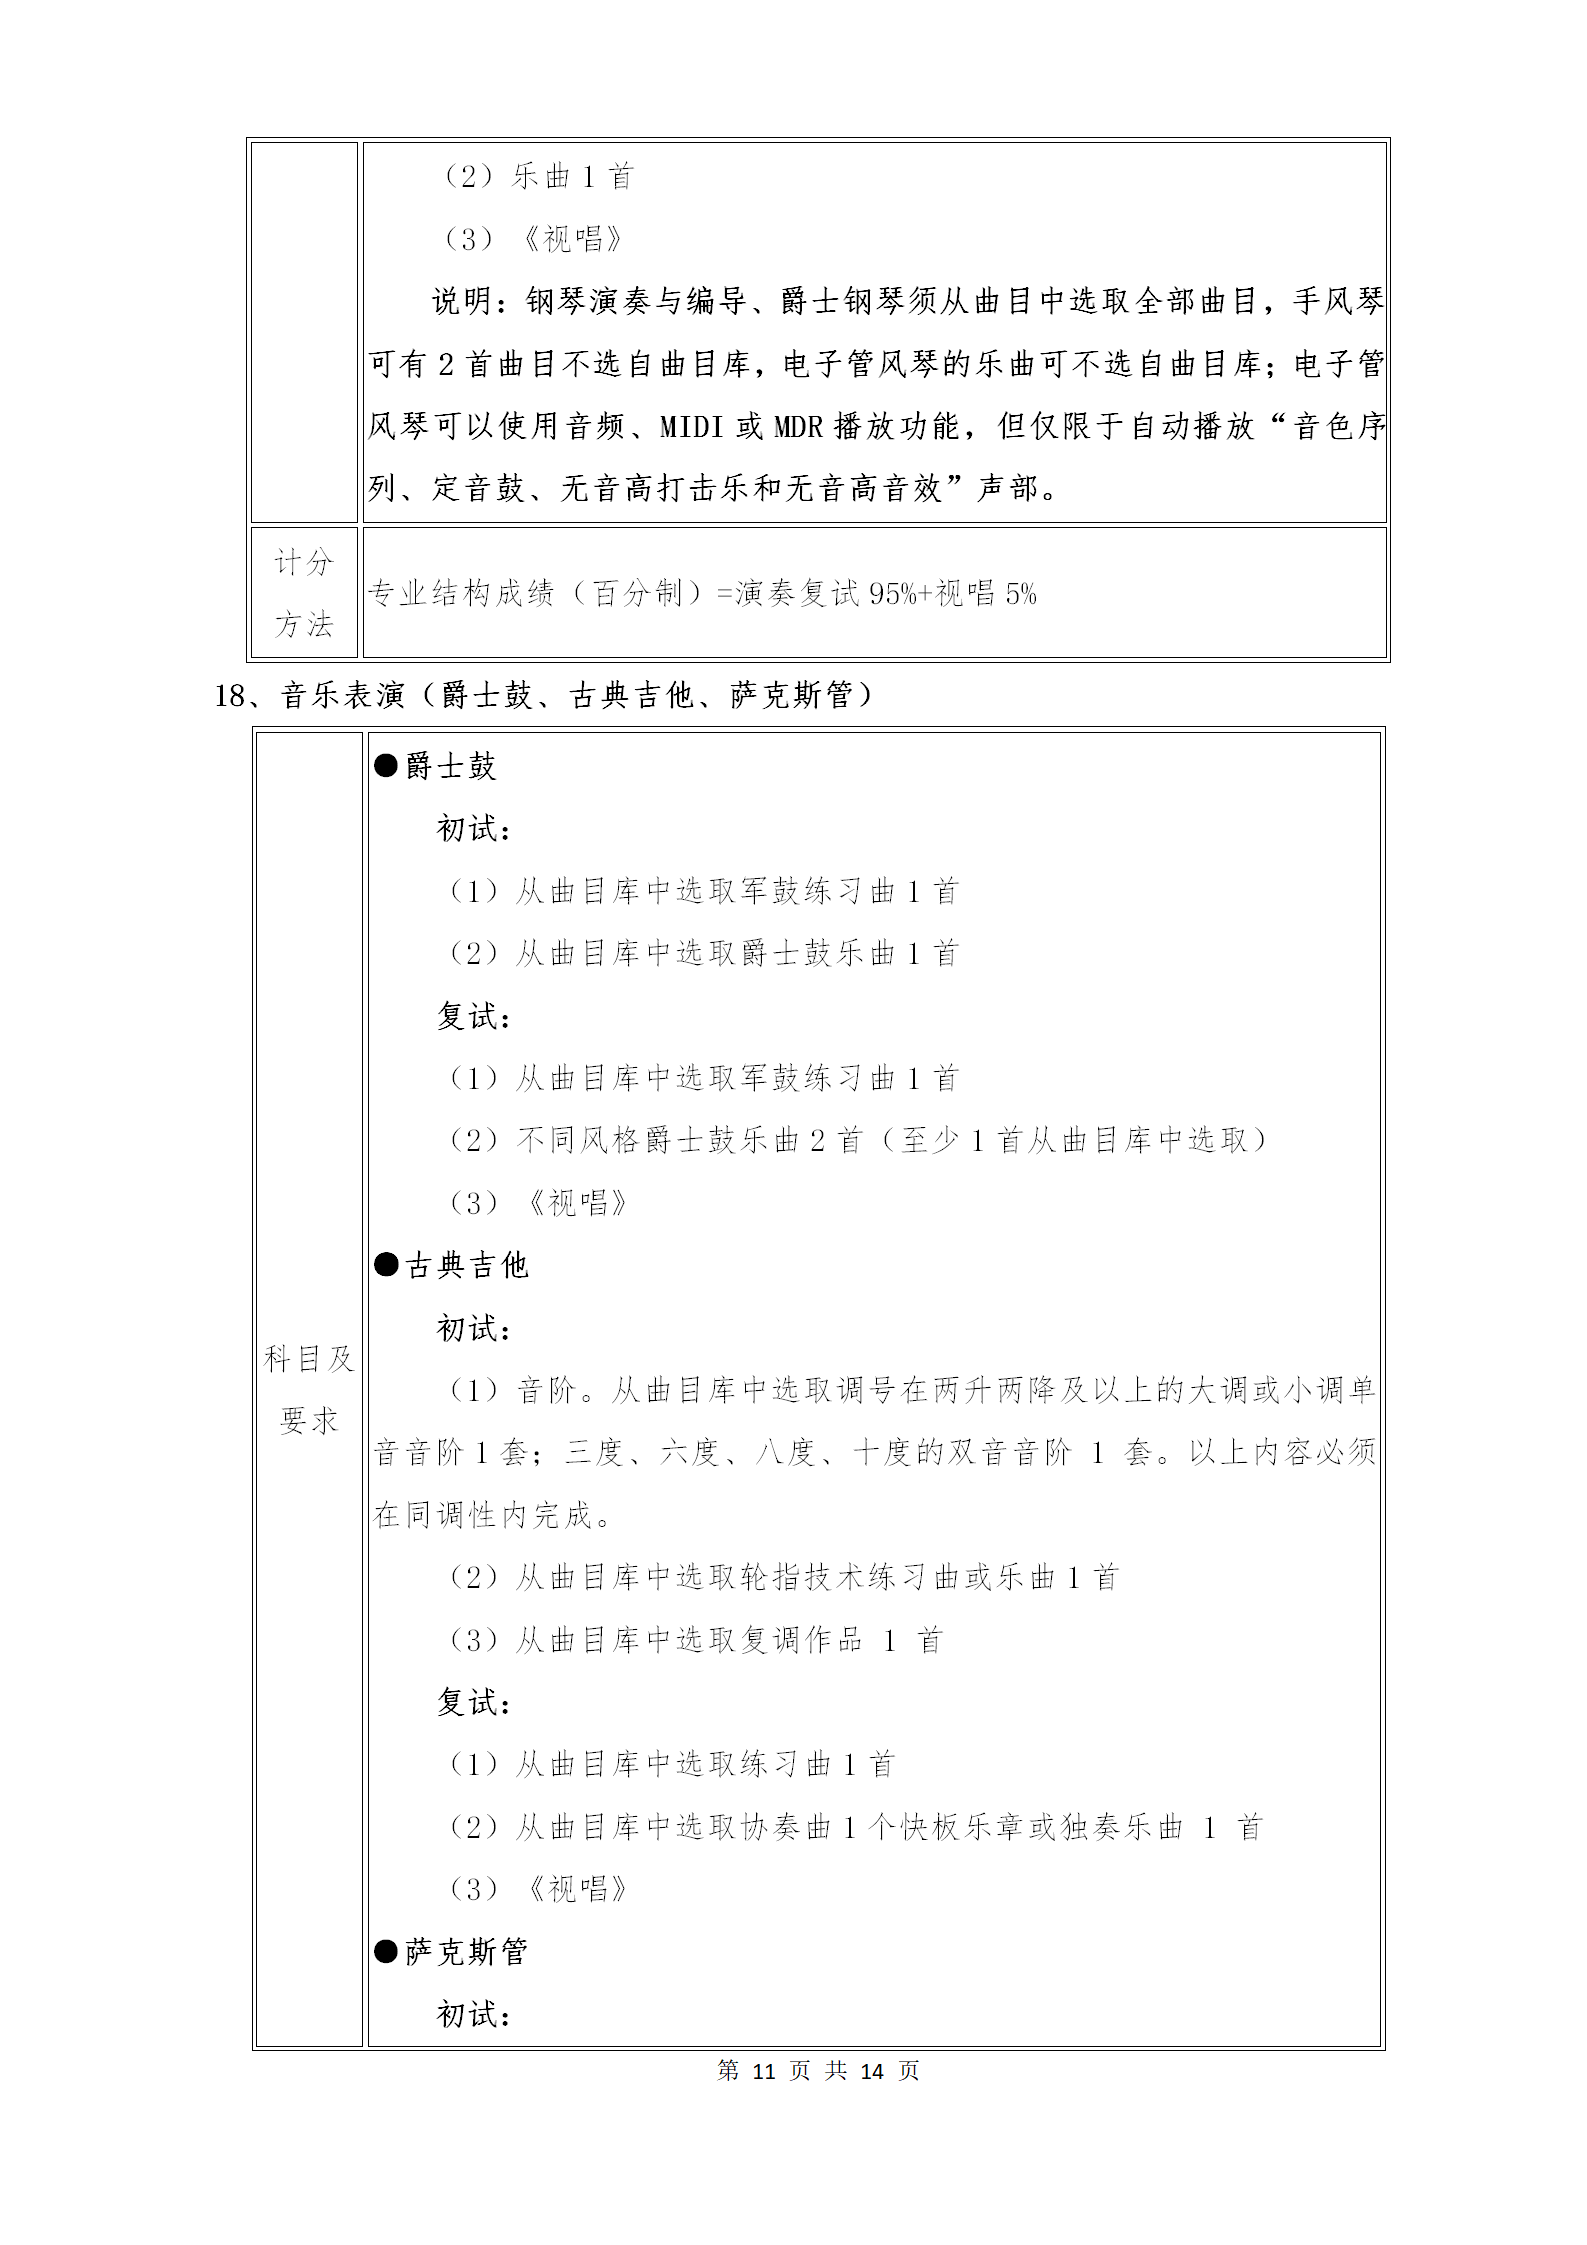 附件1：武汉音乐学院2021年普通本科招生专业考试内容和计分方法（调整版）_11.png